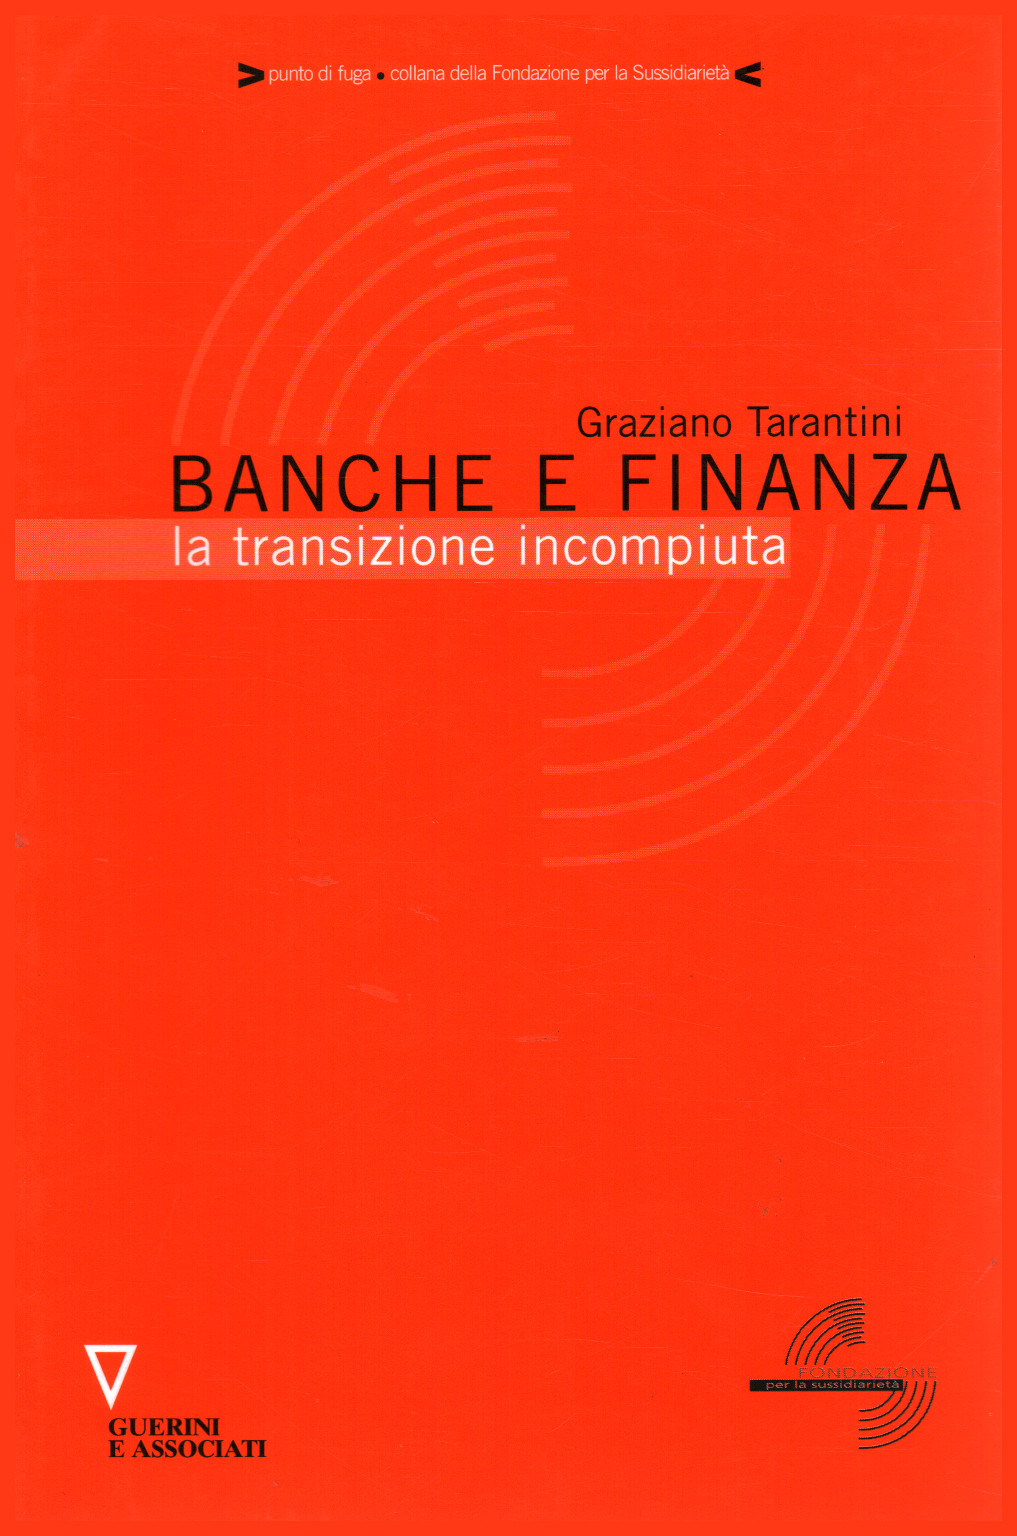 Banken und finanzwesen, Graziano Tarantino